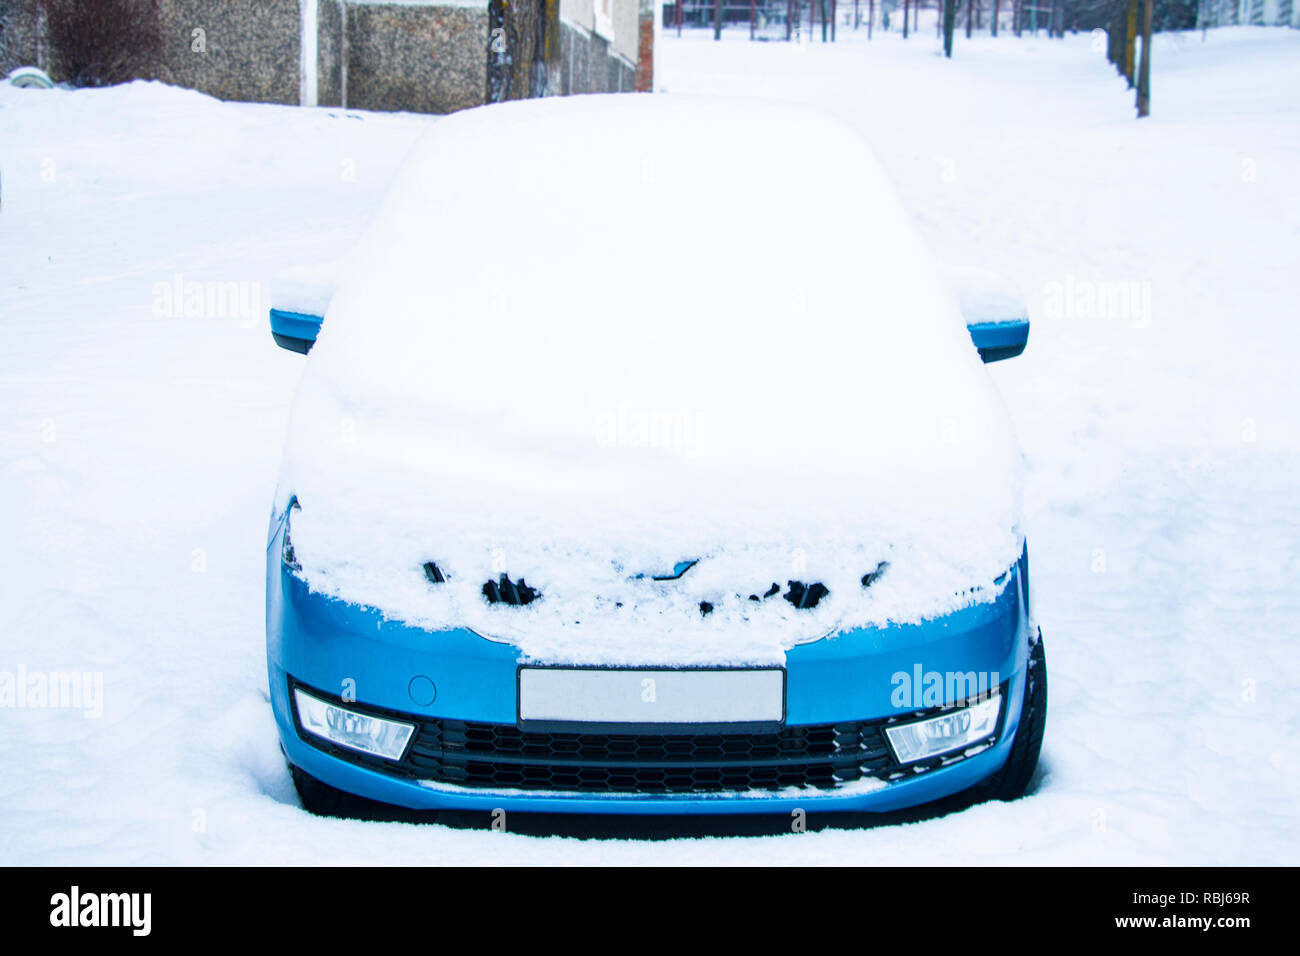 https://c8.alamy.com/compde/rbj69r/gefrorene-auto-im-winter-schnee-bedeckte-ansicht-frontscheibe-windschutzscheibe-und-motorhaube-auf-verschneiten-hintergrund-rbj69r.jpg